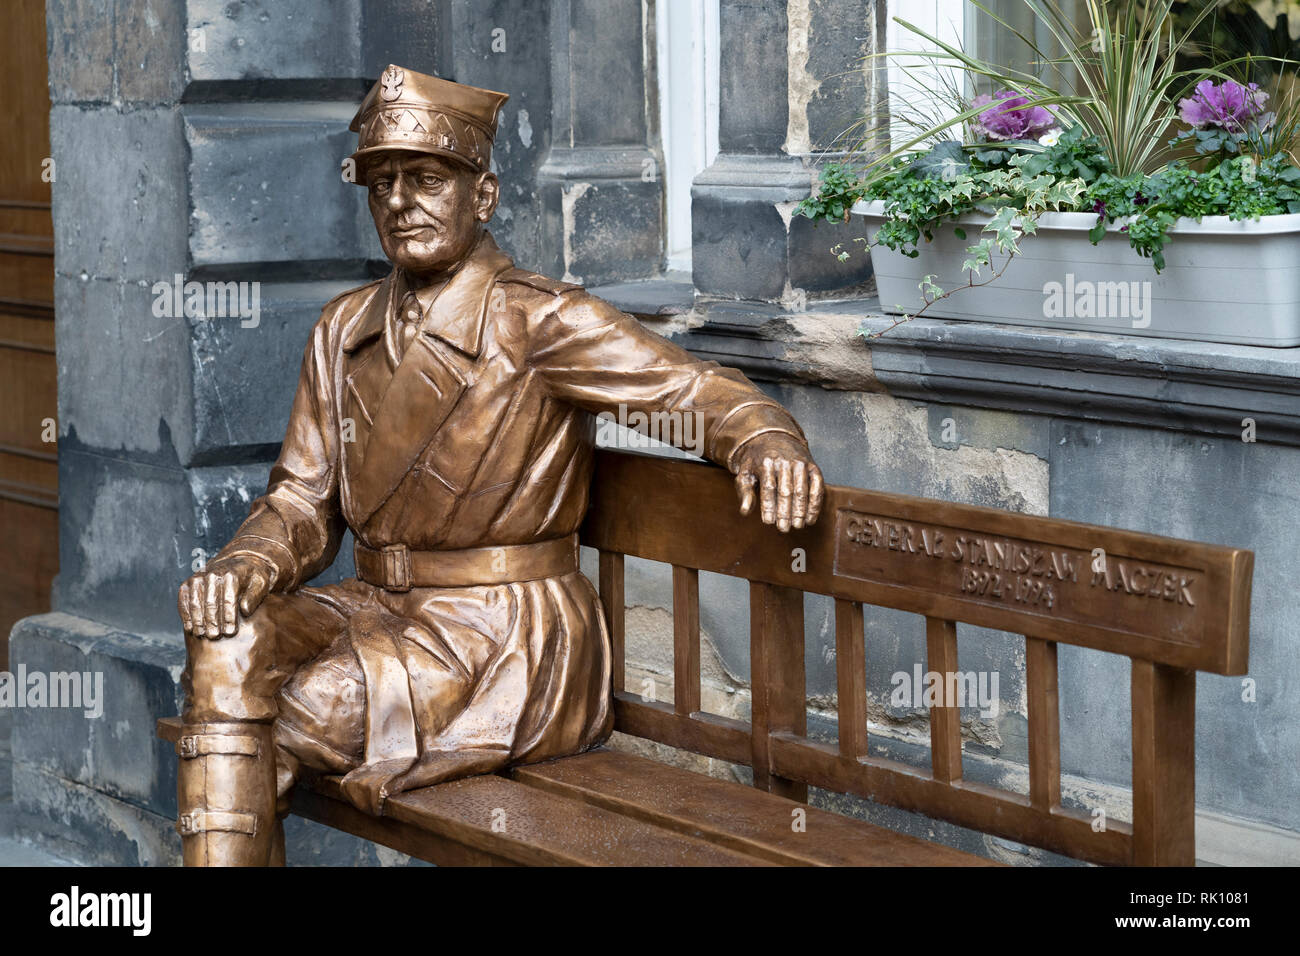 Estatua del héroe de guerra polaco Stanislaw Maczek General en salas en la ciudad vieja de Edimburgo, Escocia, Reino Unido Foto de stock